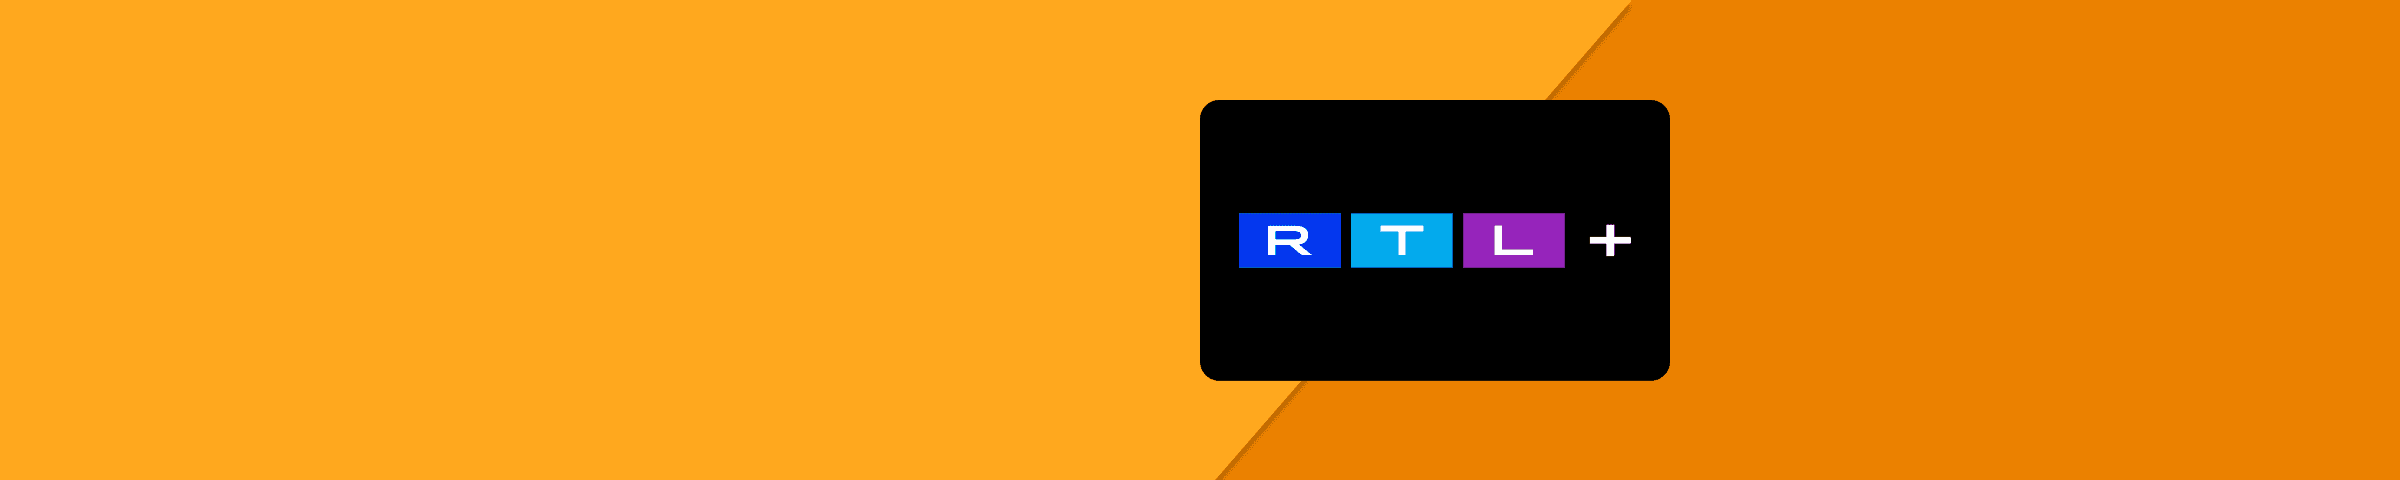 TV Now RTL+